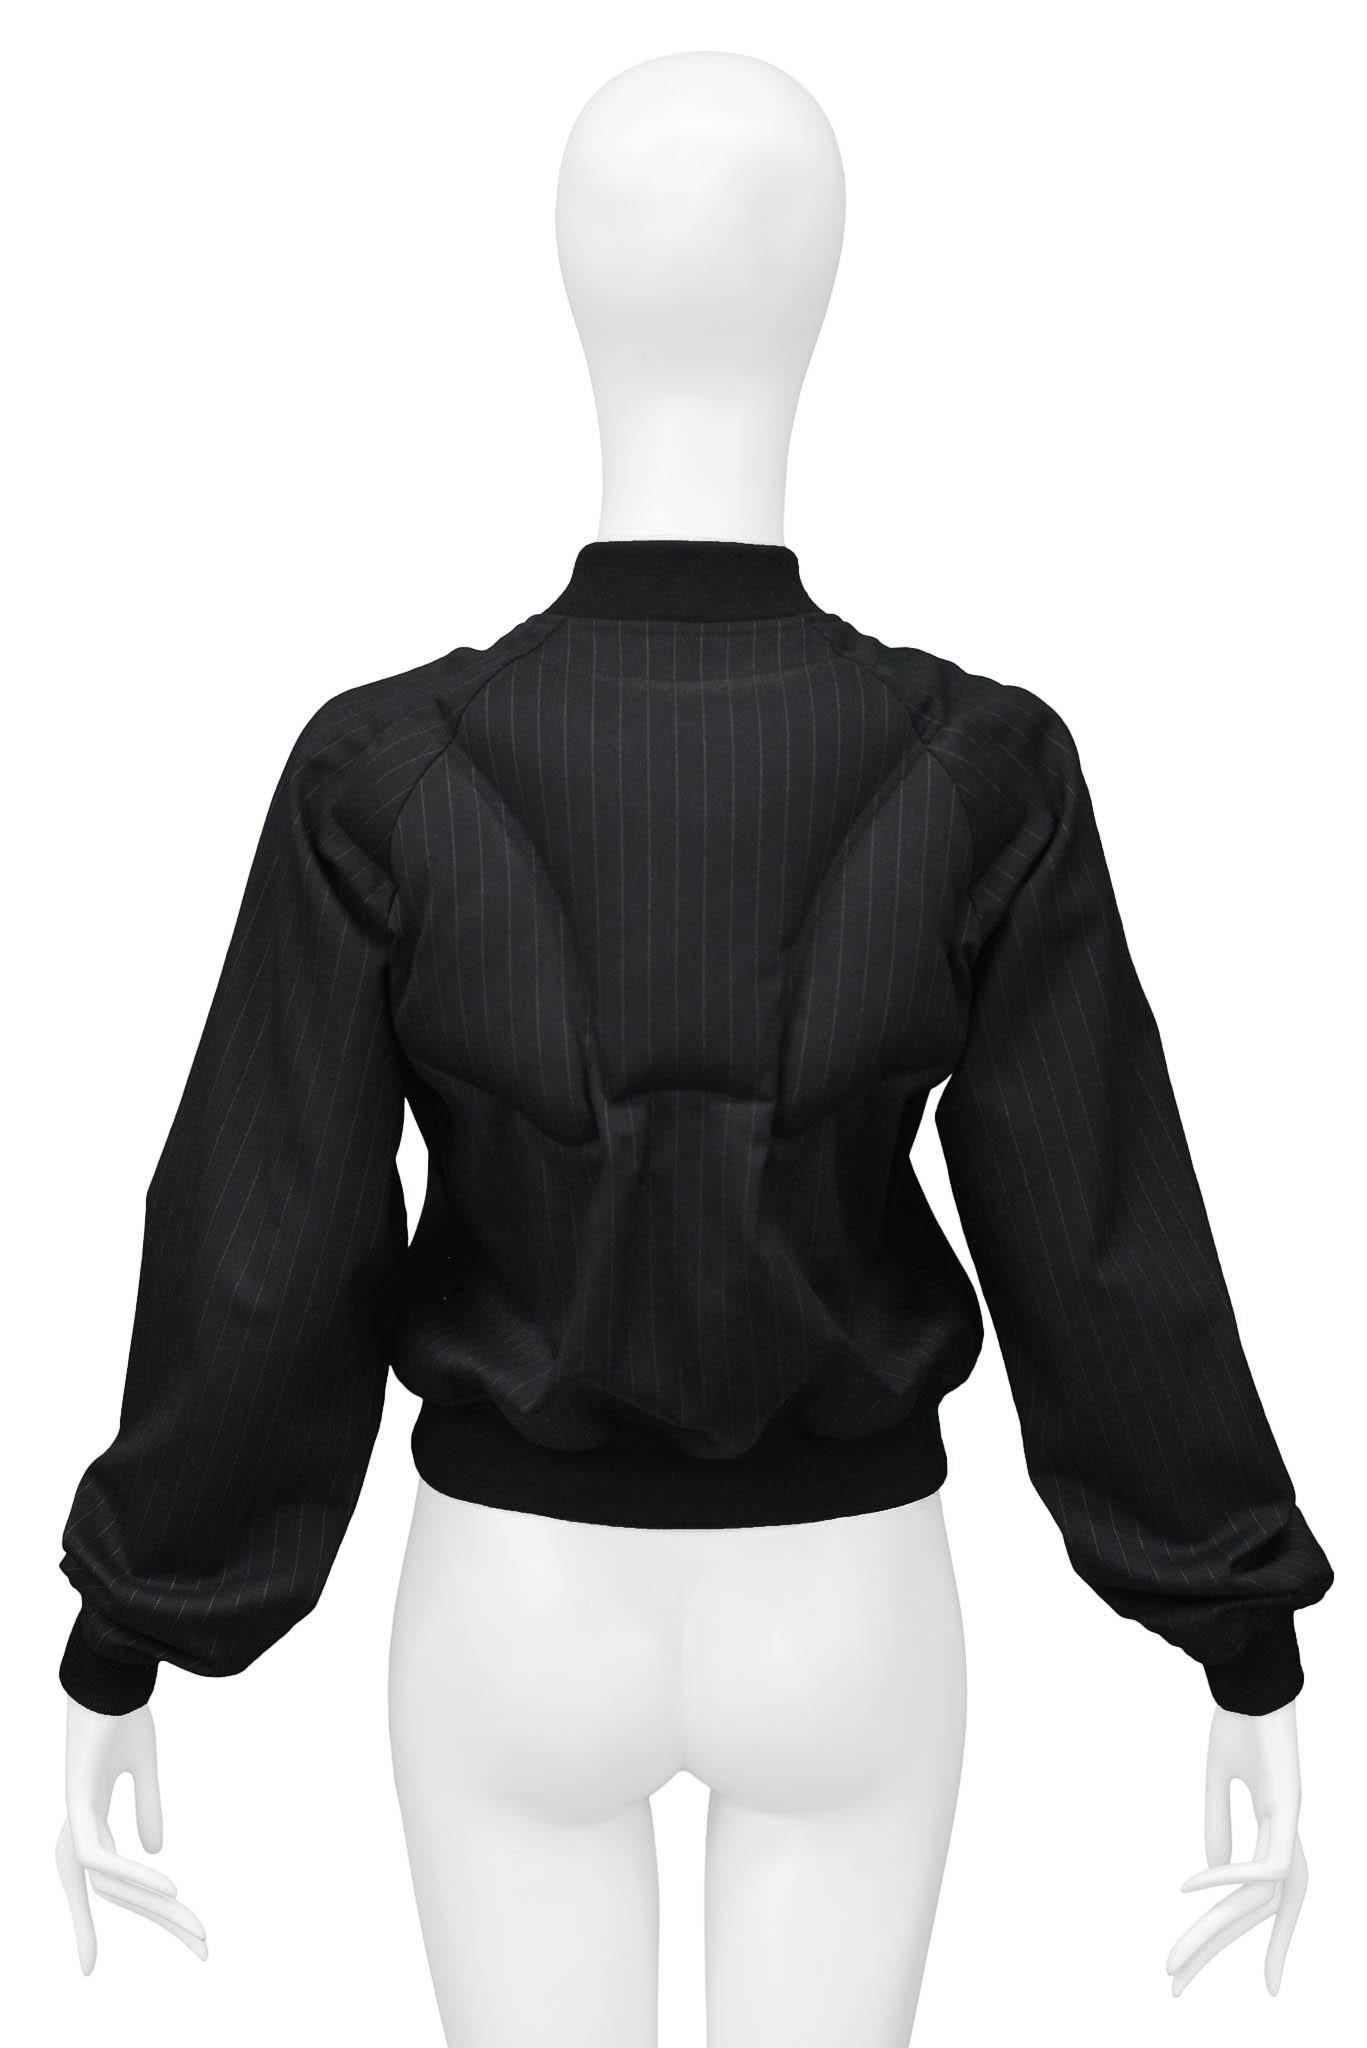 Comme Des Garcons Black Padded Pinstripe Jacket 2010 For Sale 1